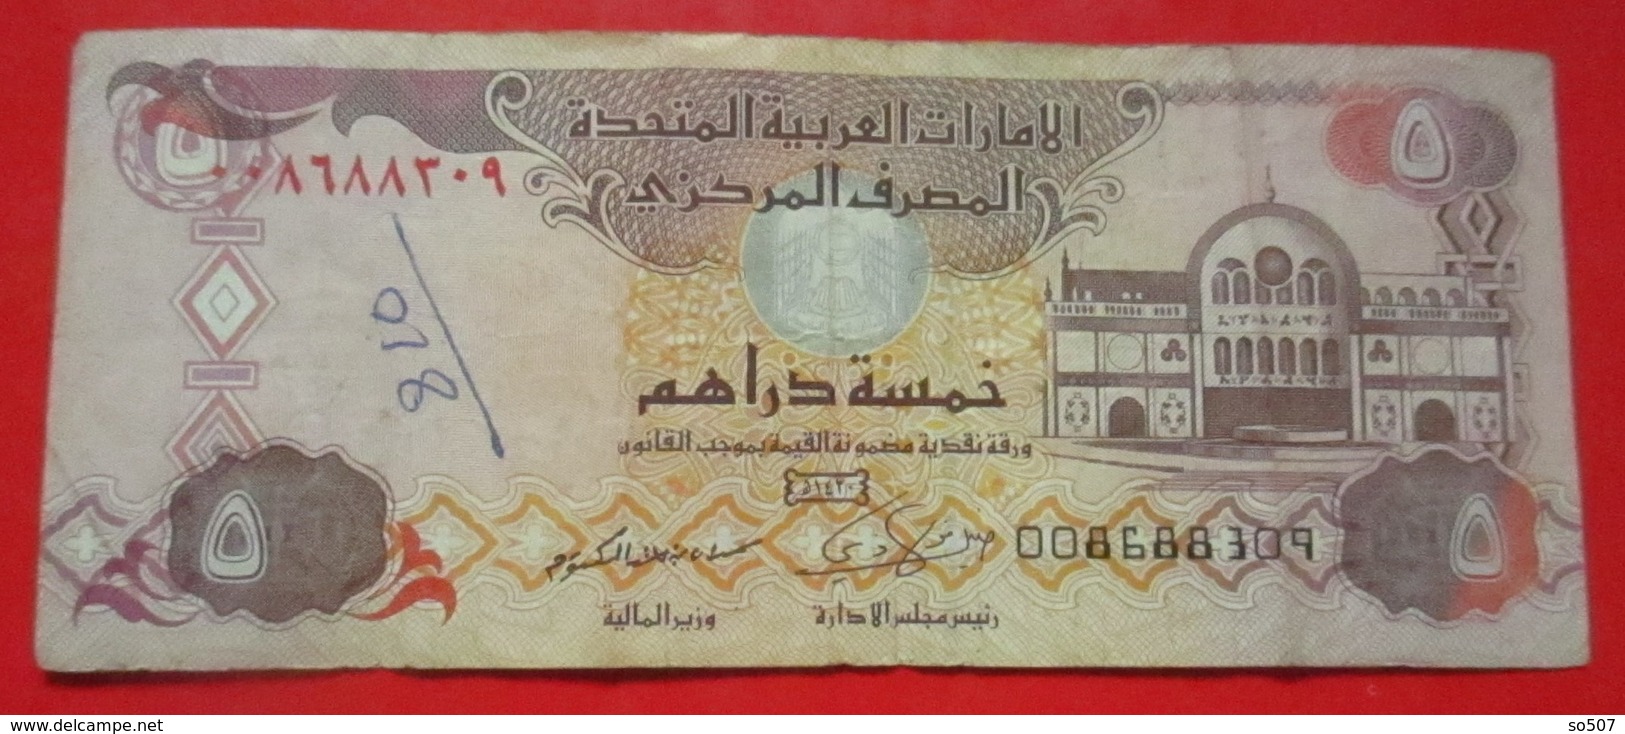 X1- 5 Dirhams 2009. United Arab Emirates- Five Dirhams, Circulated Banknote - Ver. Arab. Emirate